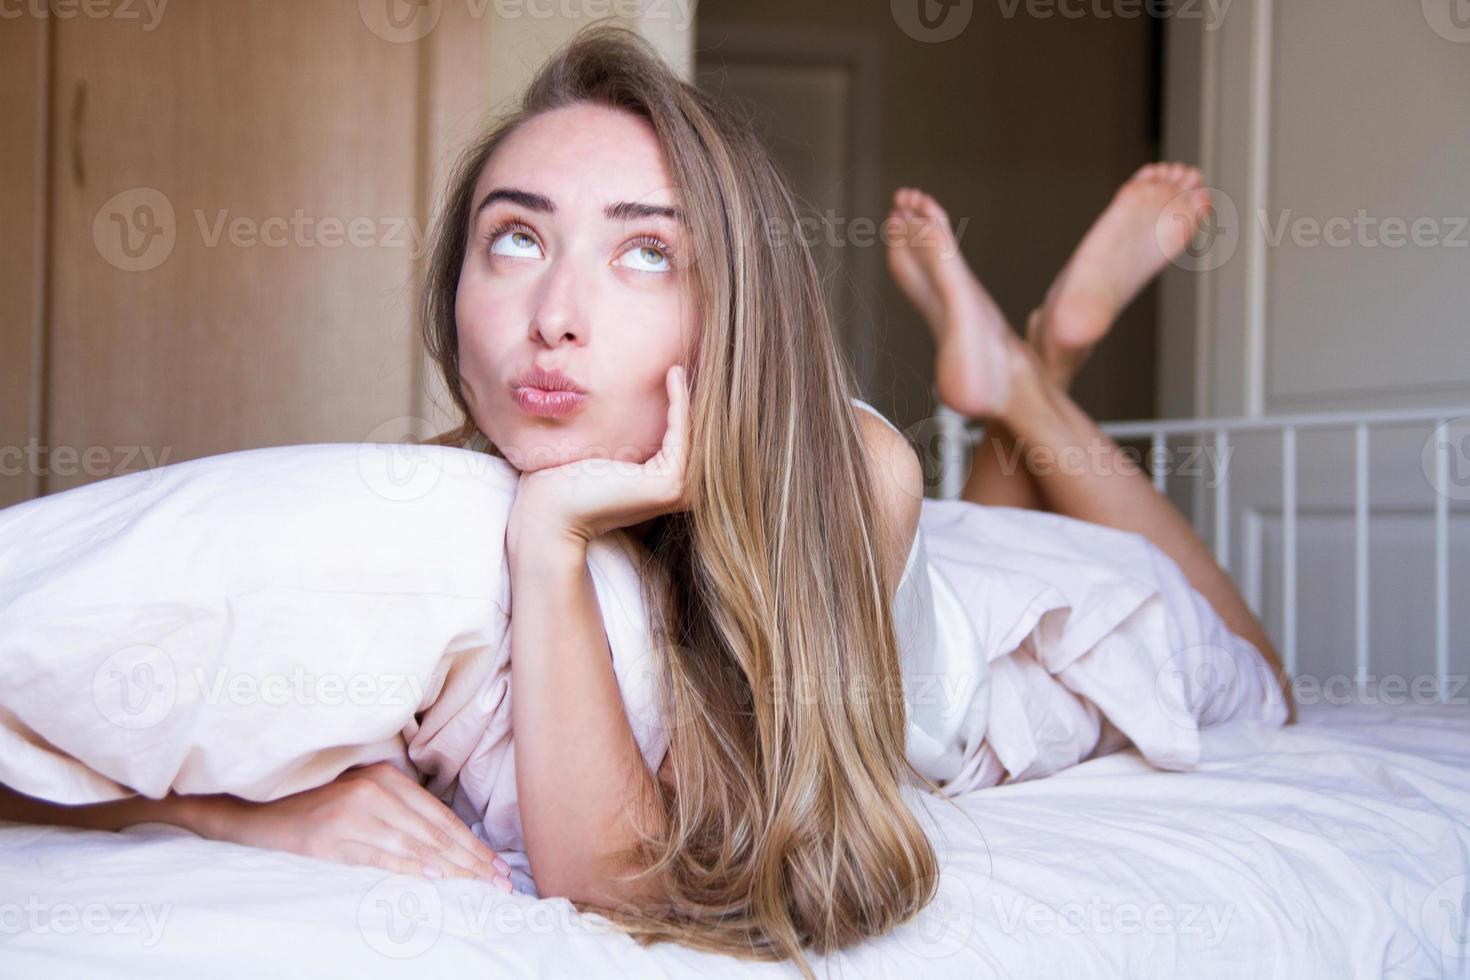 close-up sexy jovem preguiçosa encontra-se de bruços na cama em lingerie delicada pela manhã - foco seletivo. estilo de vida foto